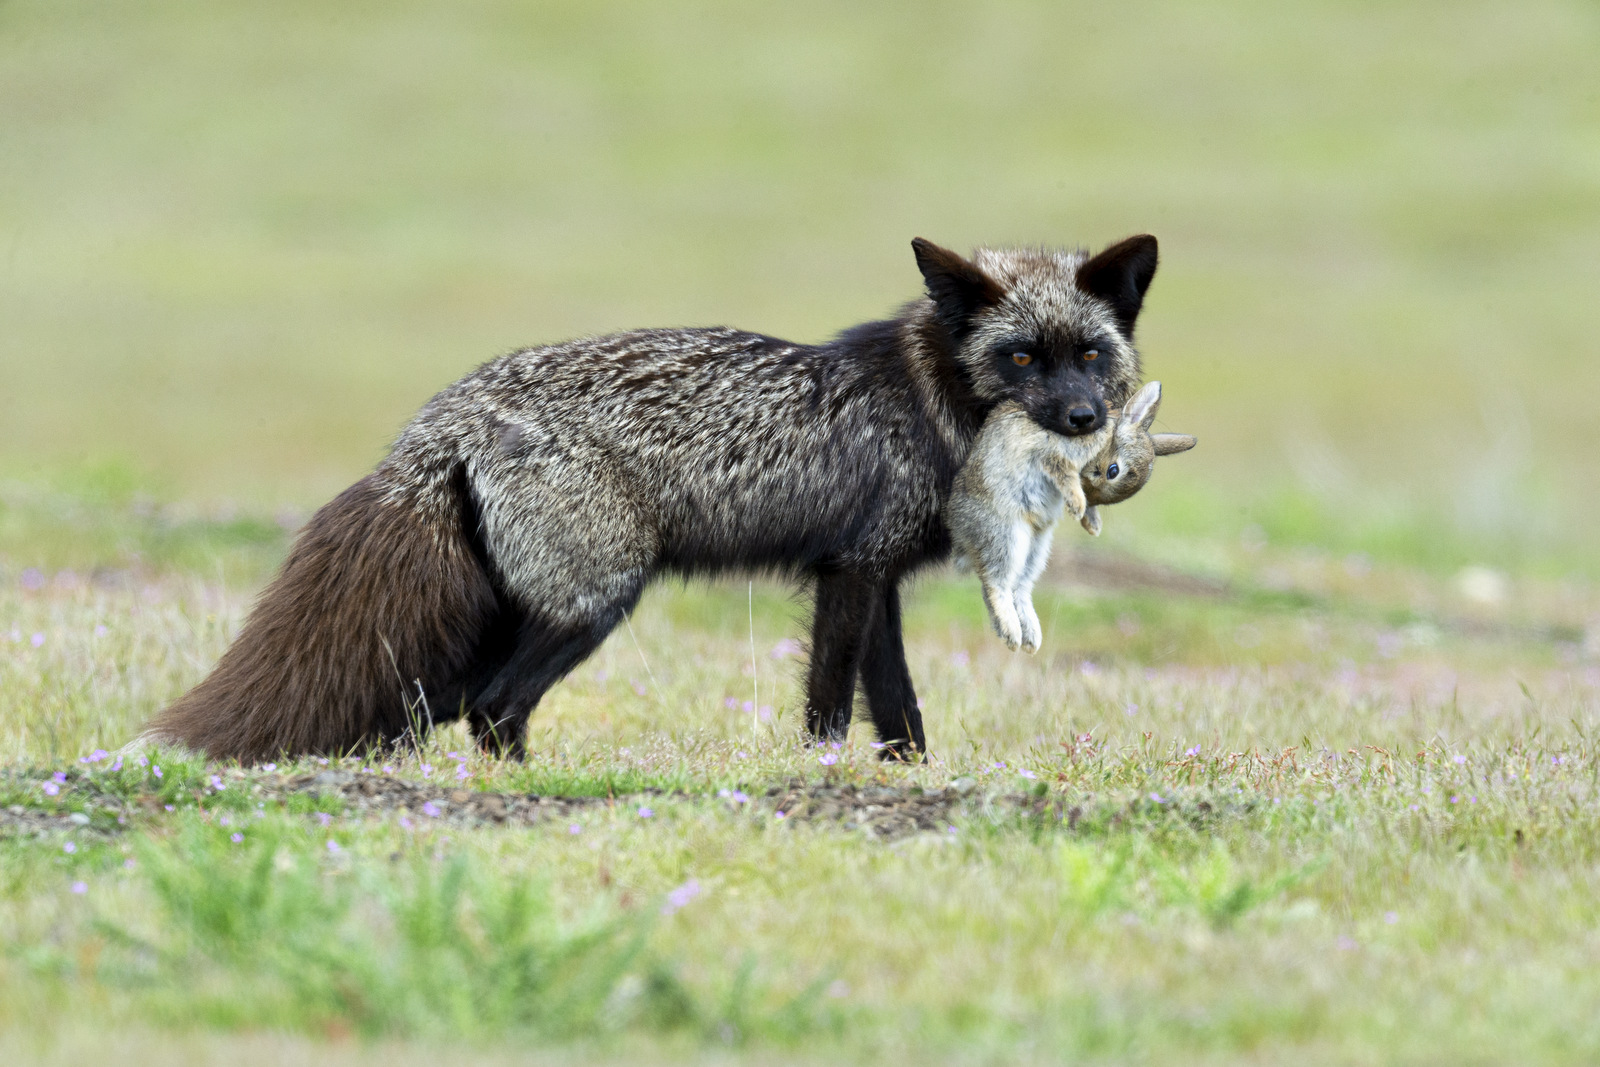 Us fox. Серебристо-черная лисица. Hansa черная лиса. Лиса вид спереди. Как называют черную лису.